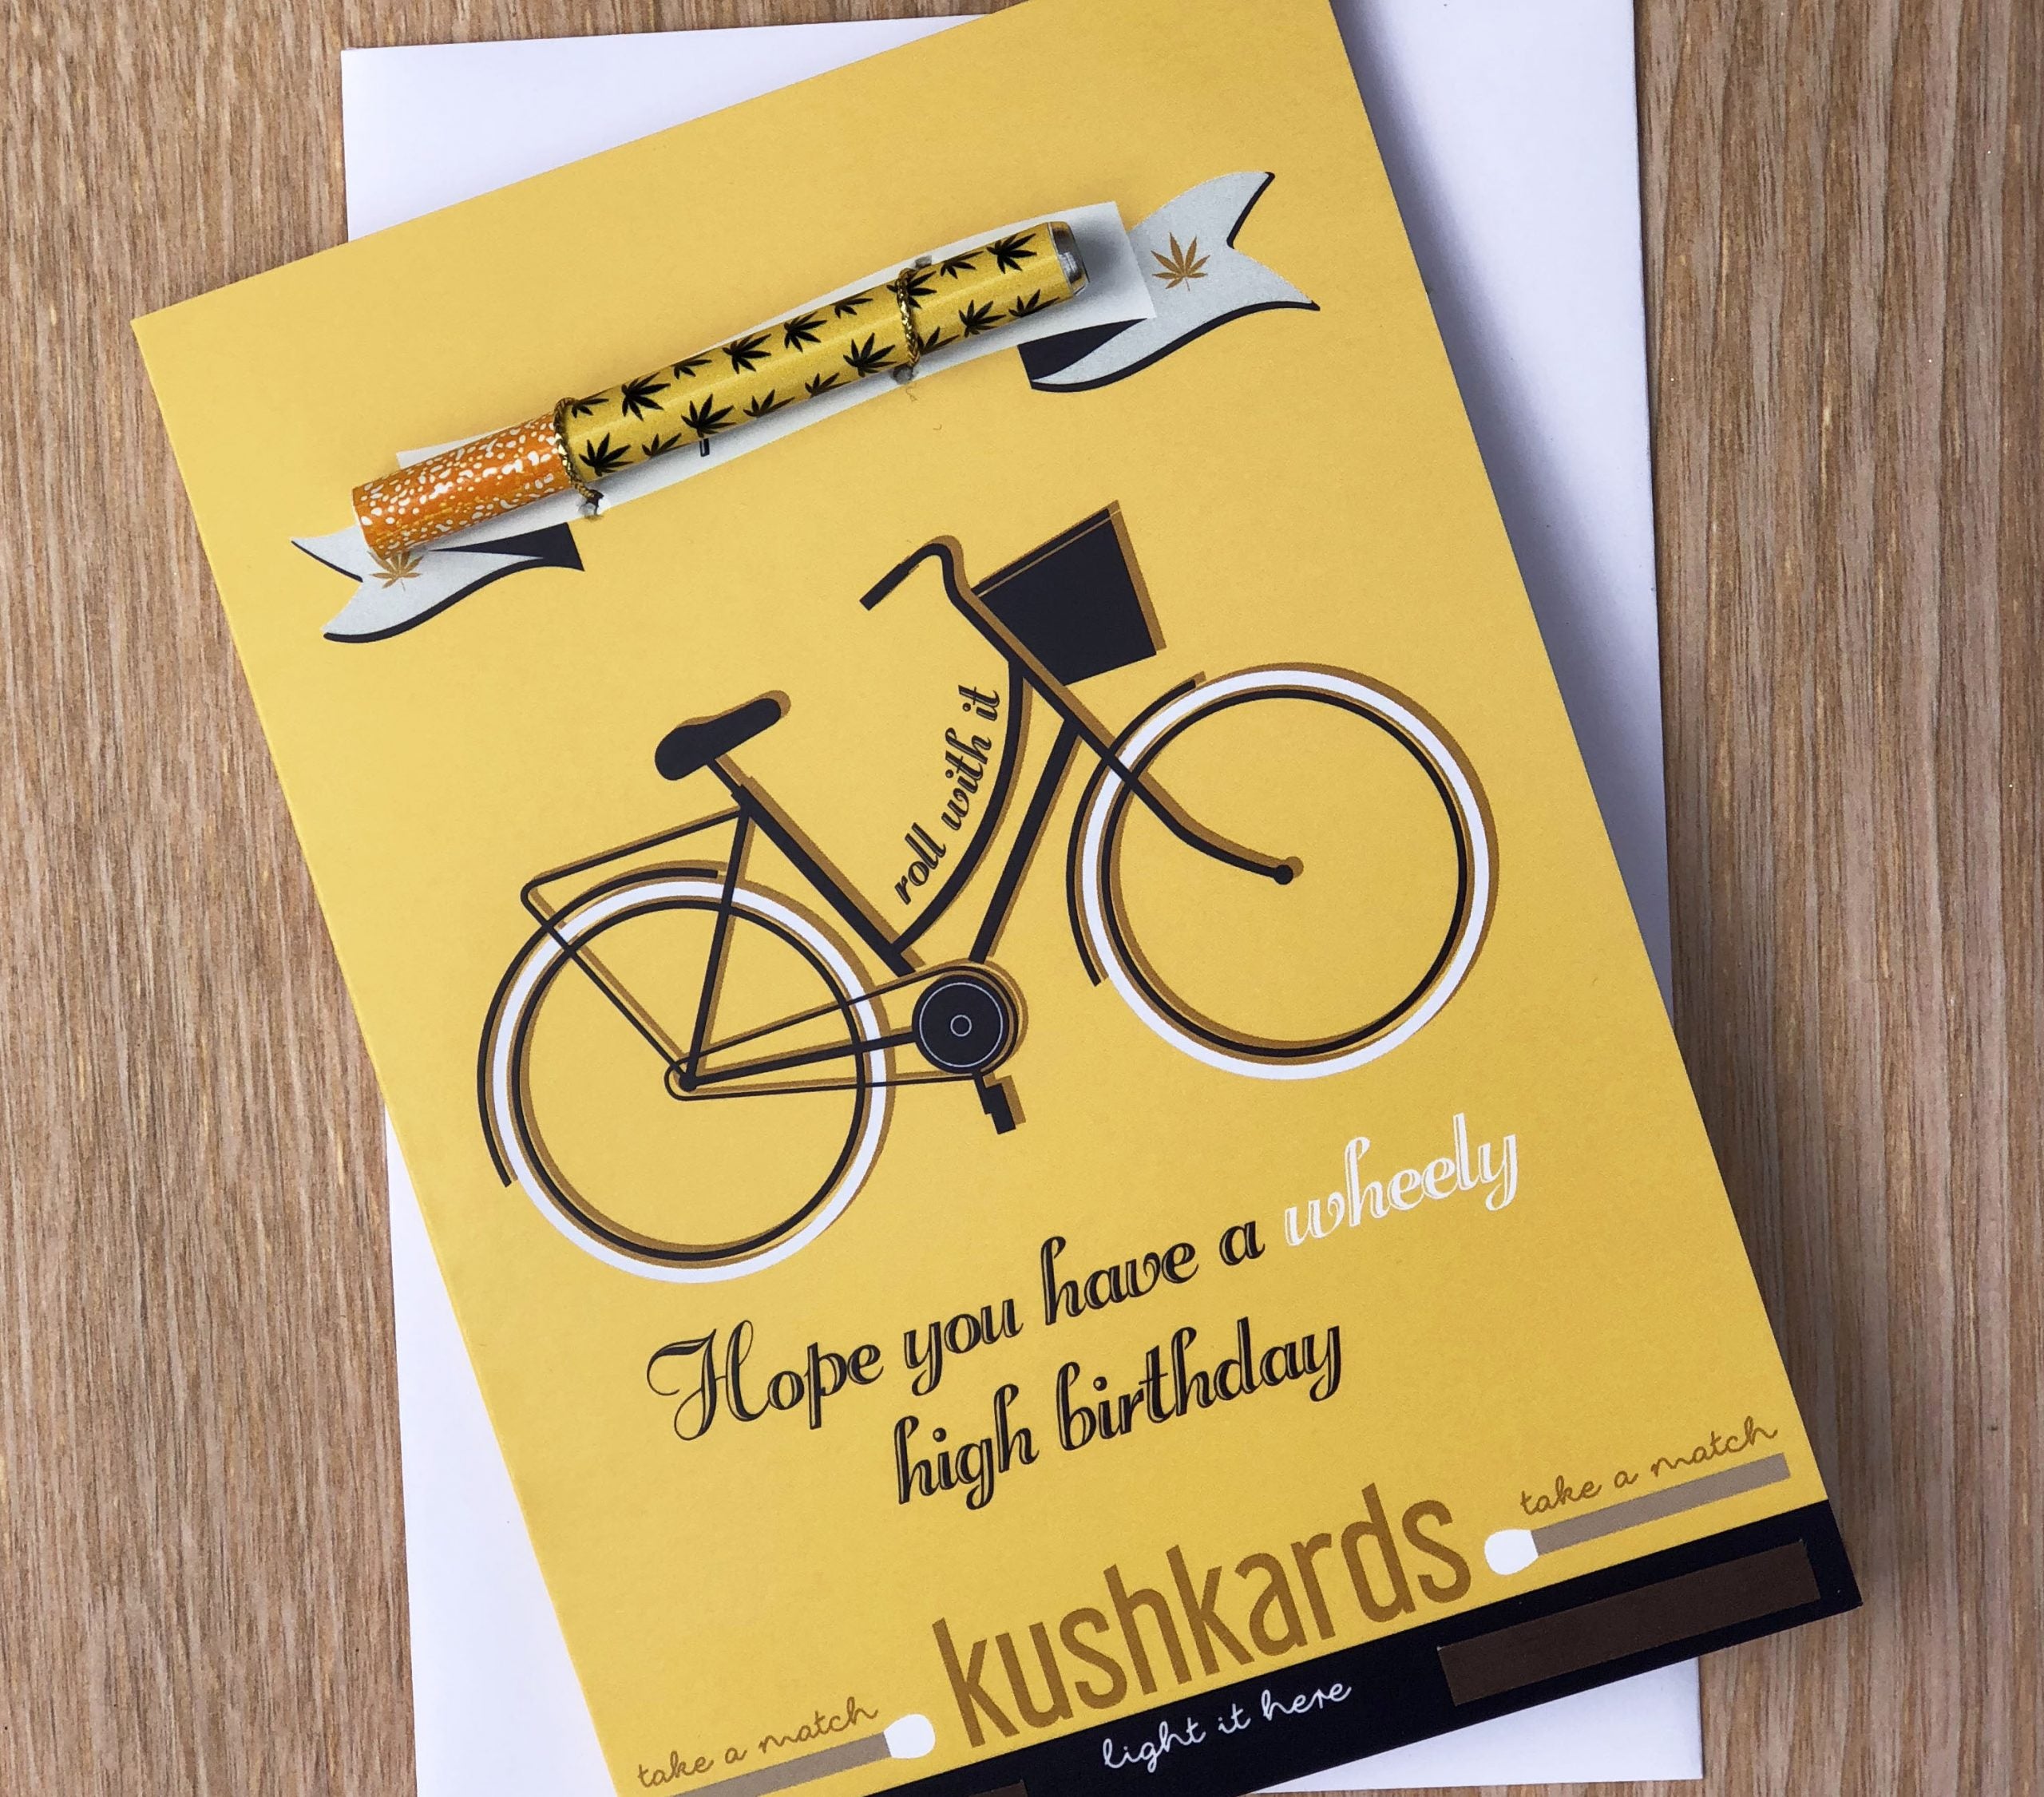 kushkards wheely high birthday